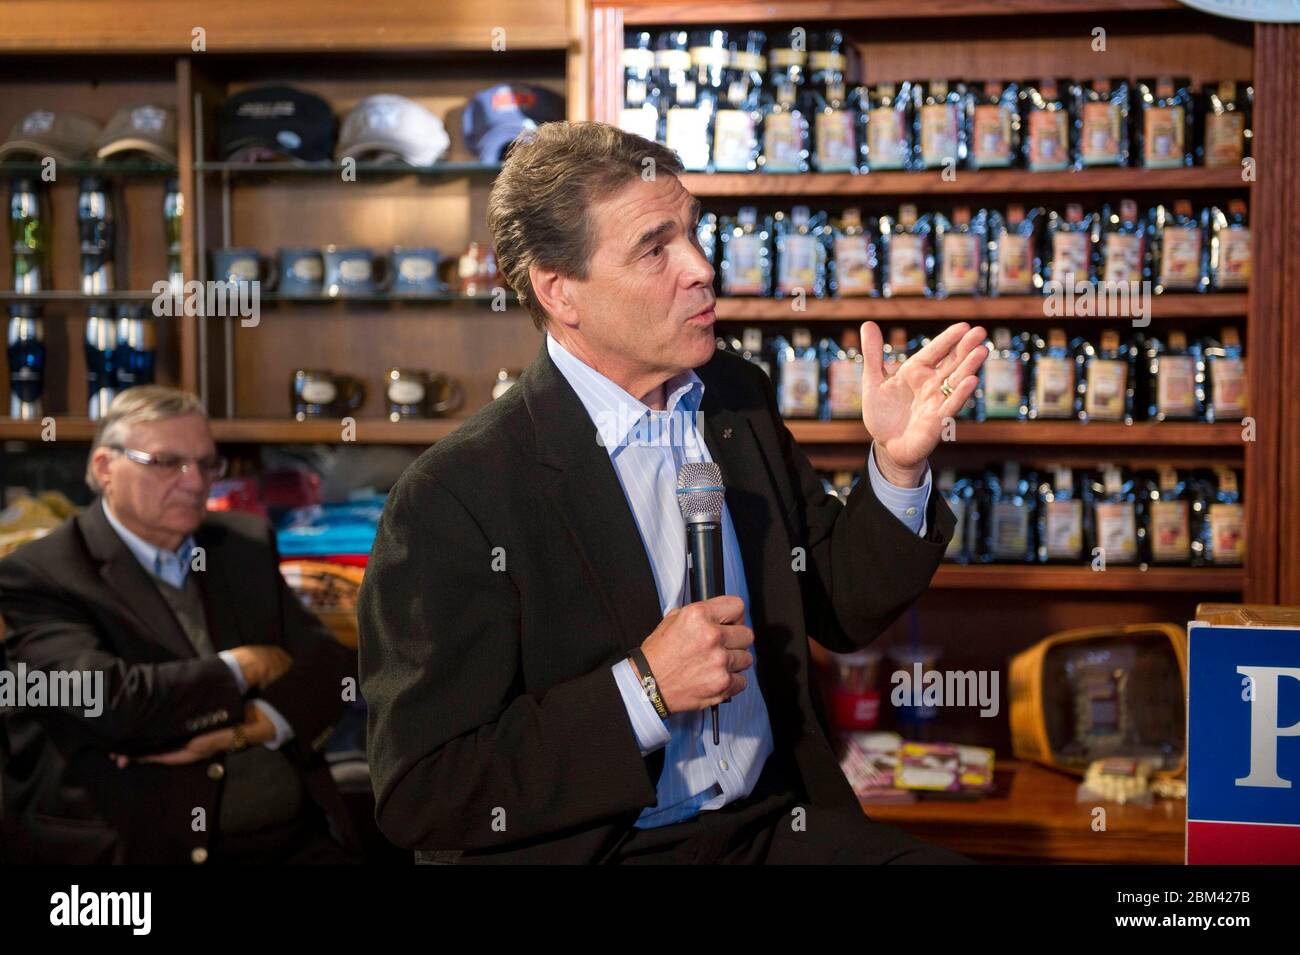 Pella, Iowa, USA, 26. Dezember 2011: Texas Gov. Rick Perry, ein Kandidat für die republikanische Präsidentschaftsnominierung, gibt bei einem Treffen im Smokey Row Coffee Shop mit den Wählern von Iowa Caucus einen letzten Schub. Perry hofft, seinen Wahlkampf wiederbeleben zu können, nachdem er seit Oktober in den meisten Umfragen stetig zurückgegangen ist. ©Bob Daemmrich Stockfoto